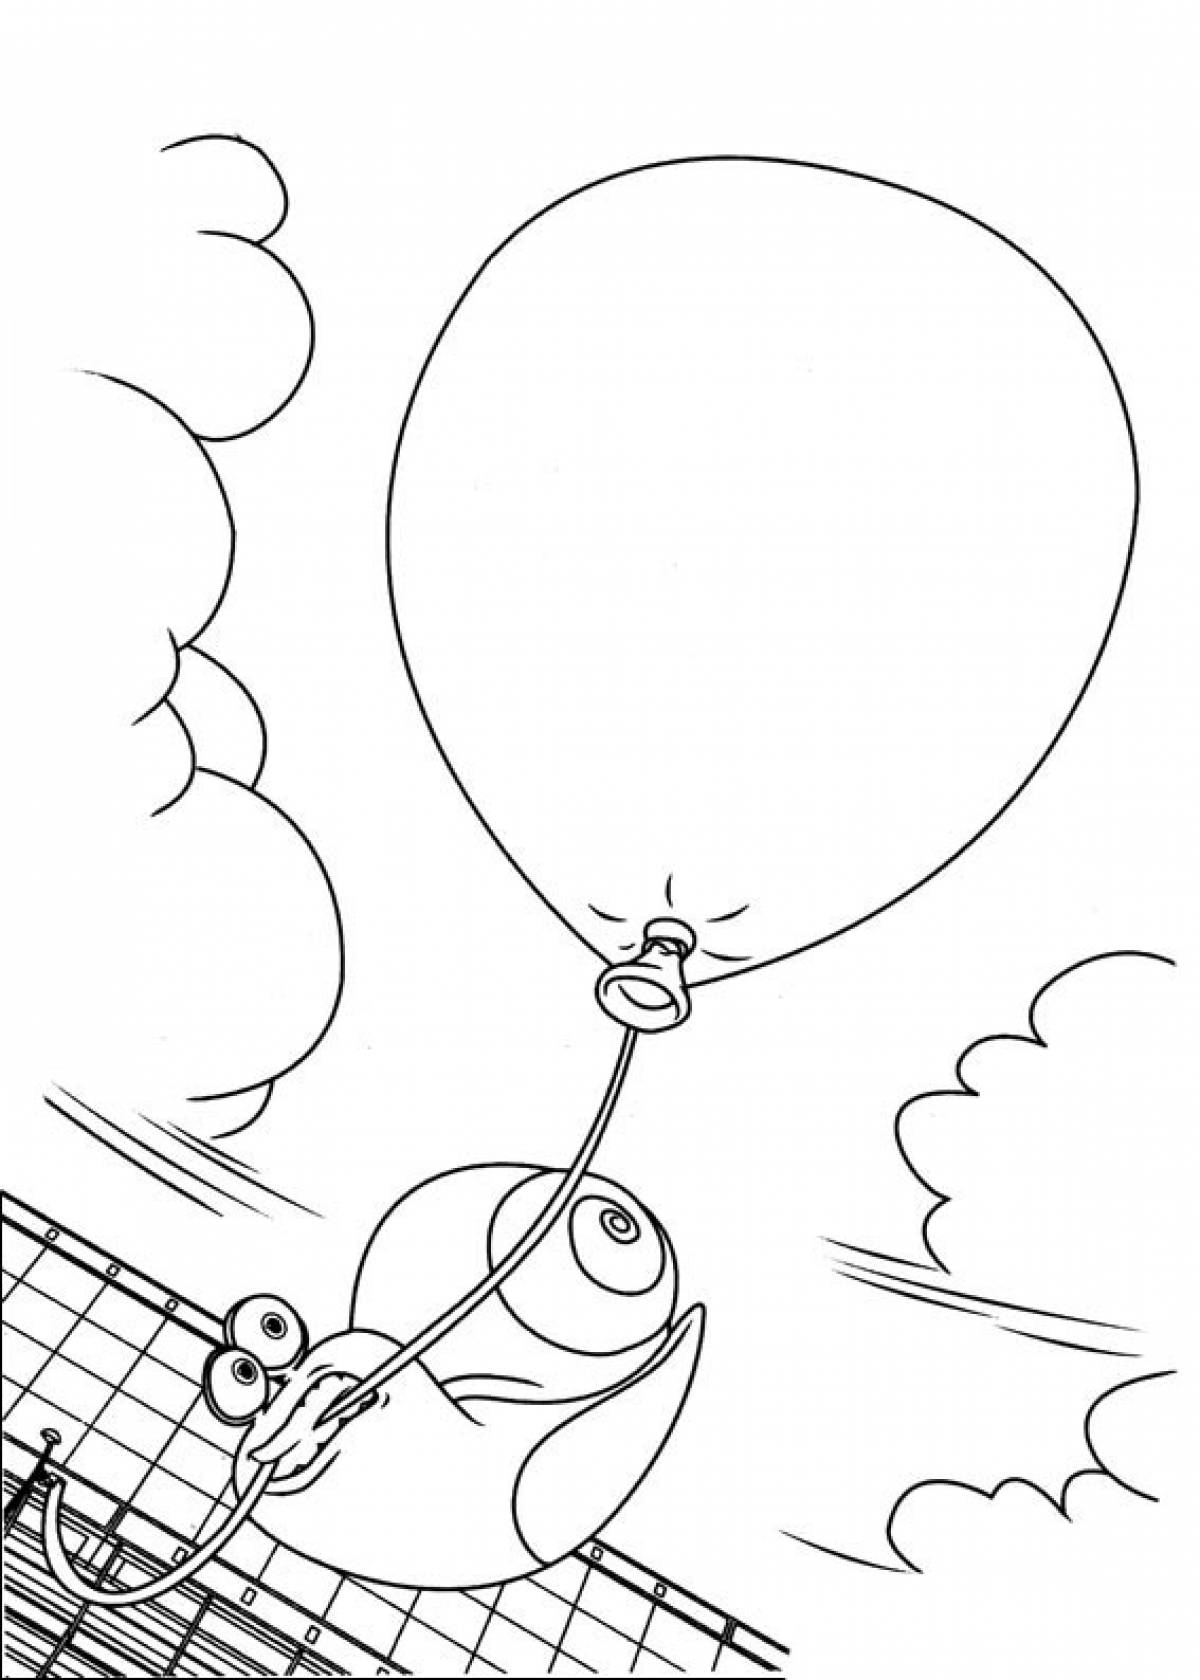 Turbo hot air balloon